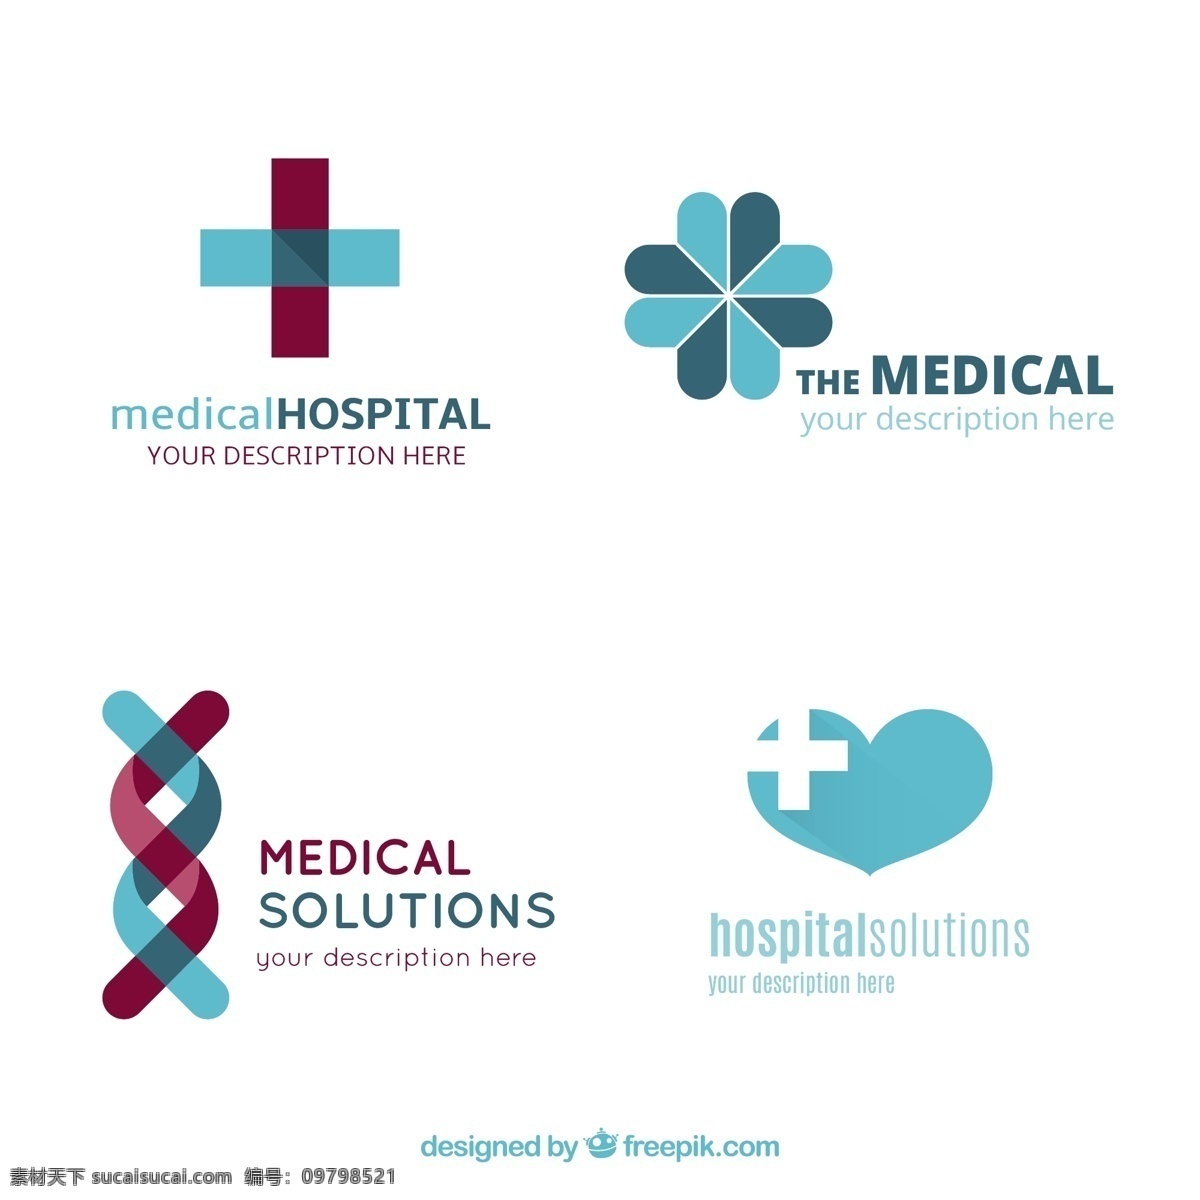 医院标识模板 标识 商业 心脏 医疗 健康 医生 医院 跨 企业 医药 公司 品牌 基因 现代 企业身份 符号 身份 白色